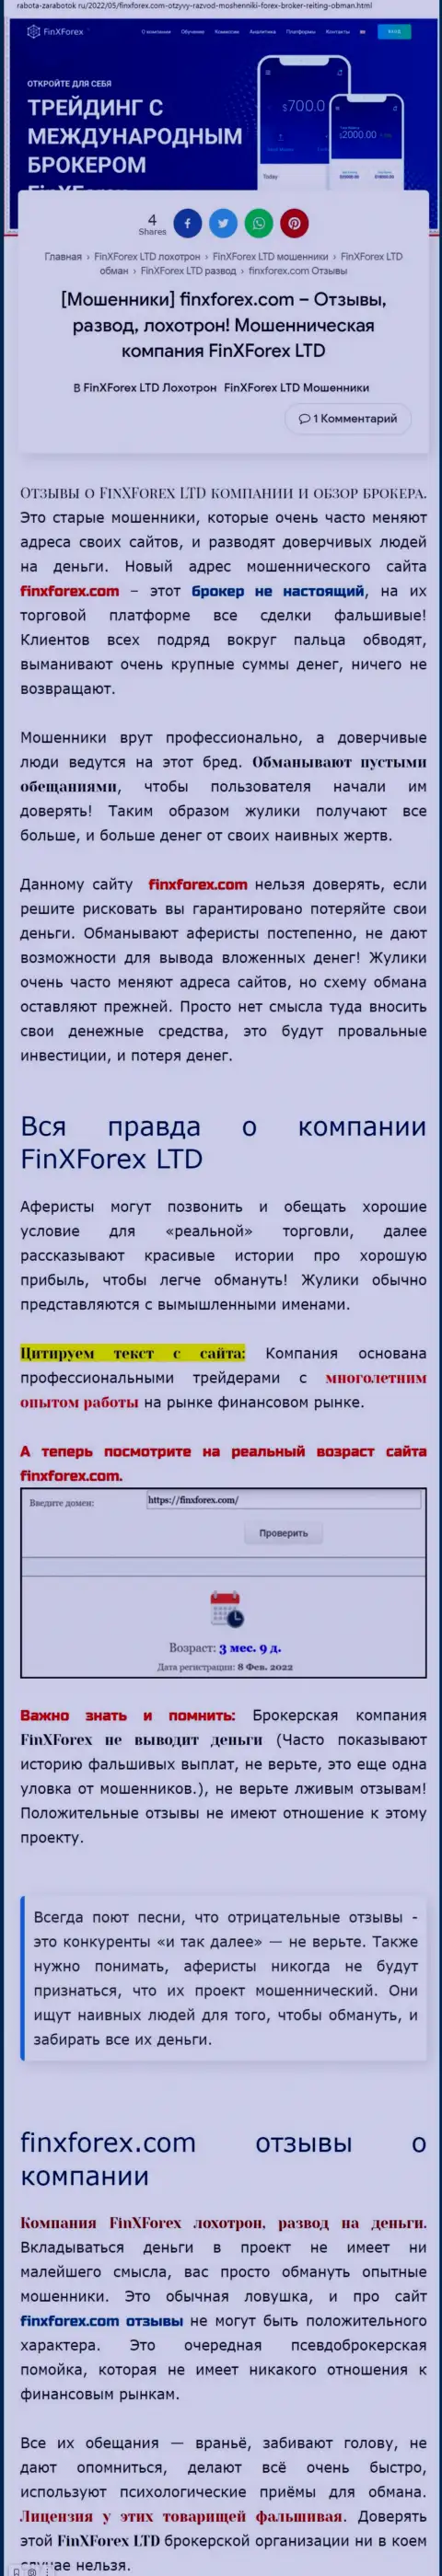 Автор обзора об FinXForex LTD заявляет, что в FinXForex разводят